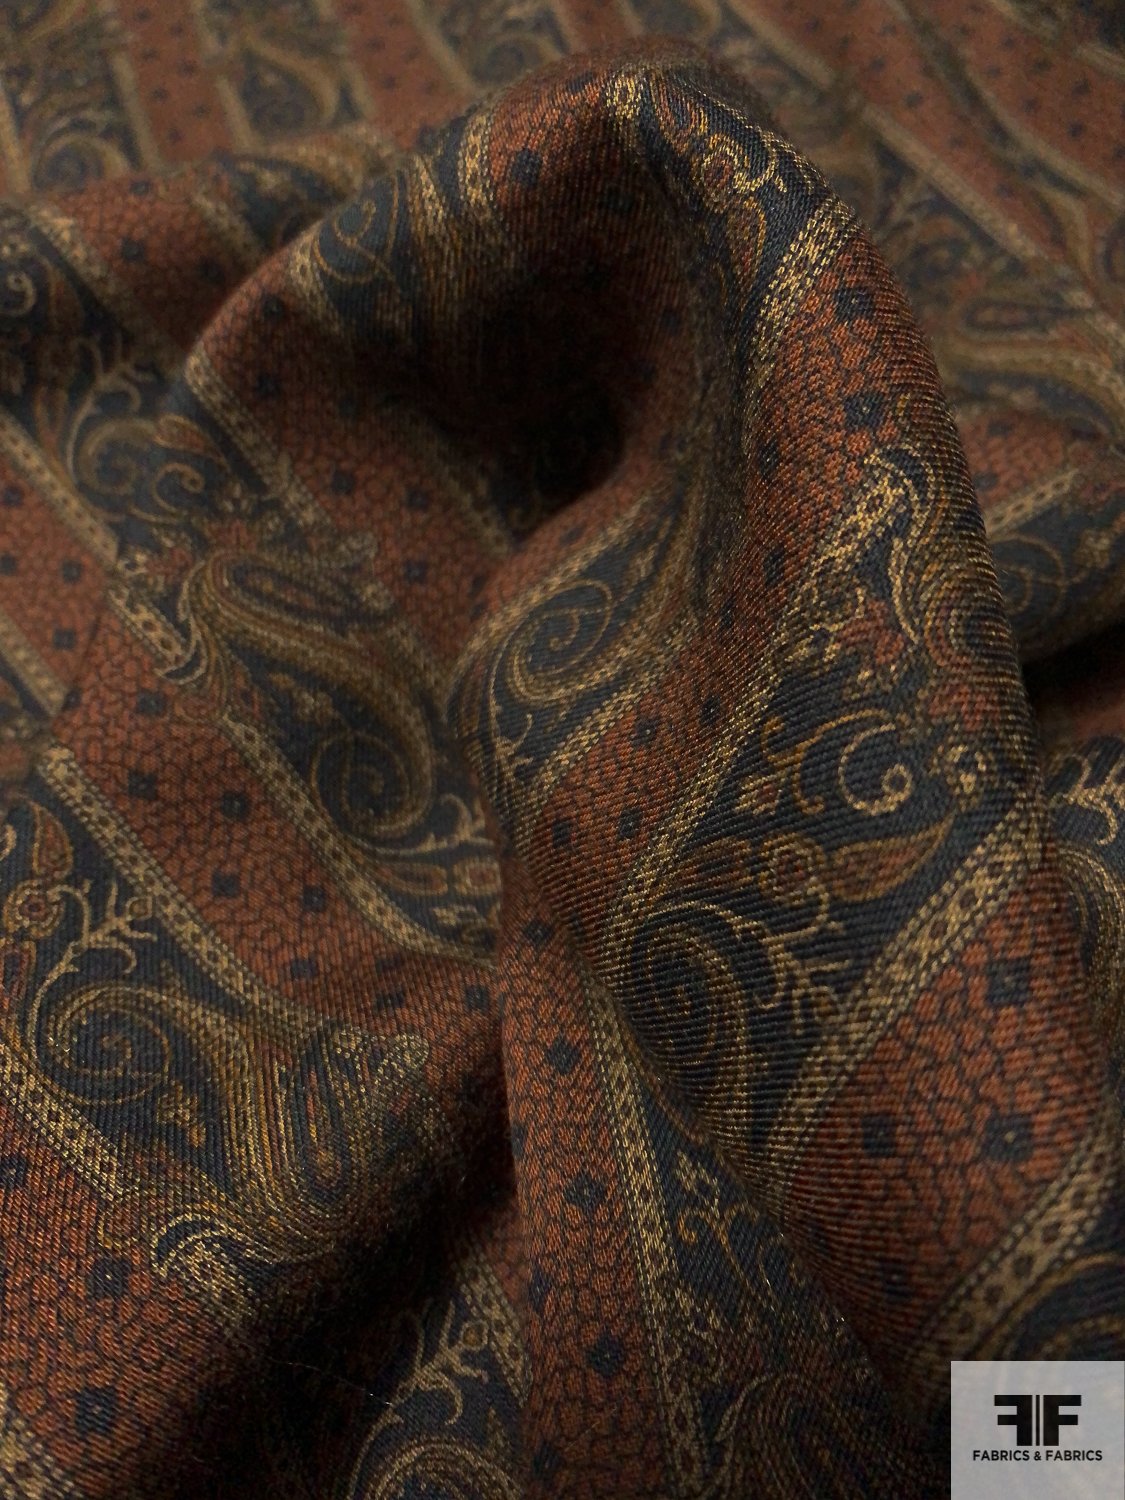 Made in Germany Striped Paisley Printed Wool Challis - Cinnamon Brown / Black